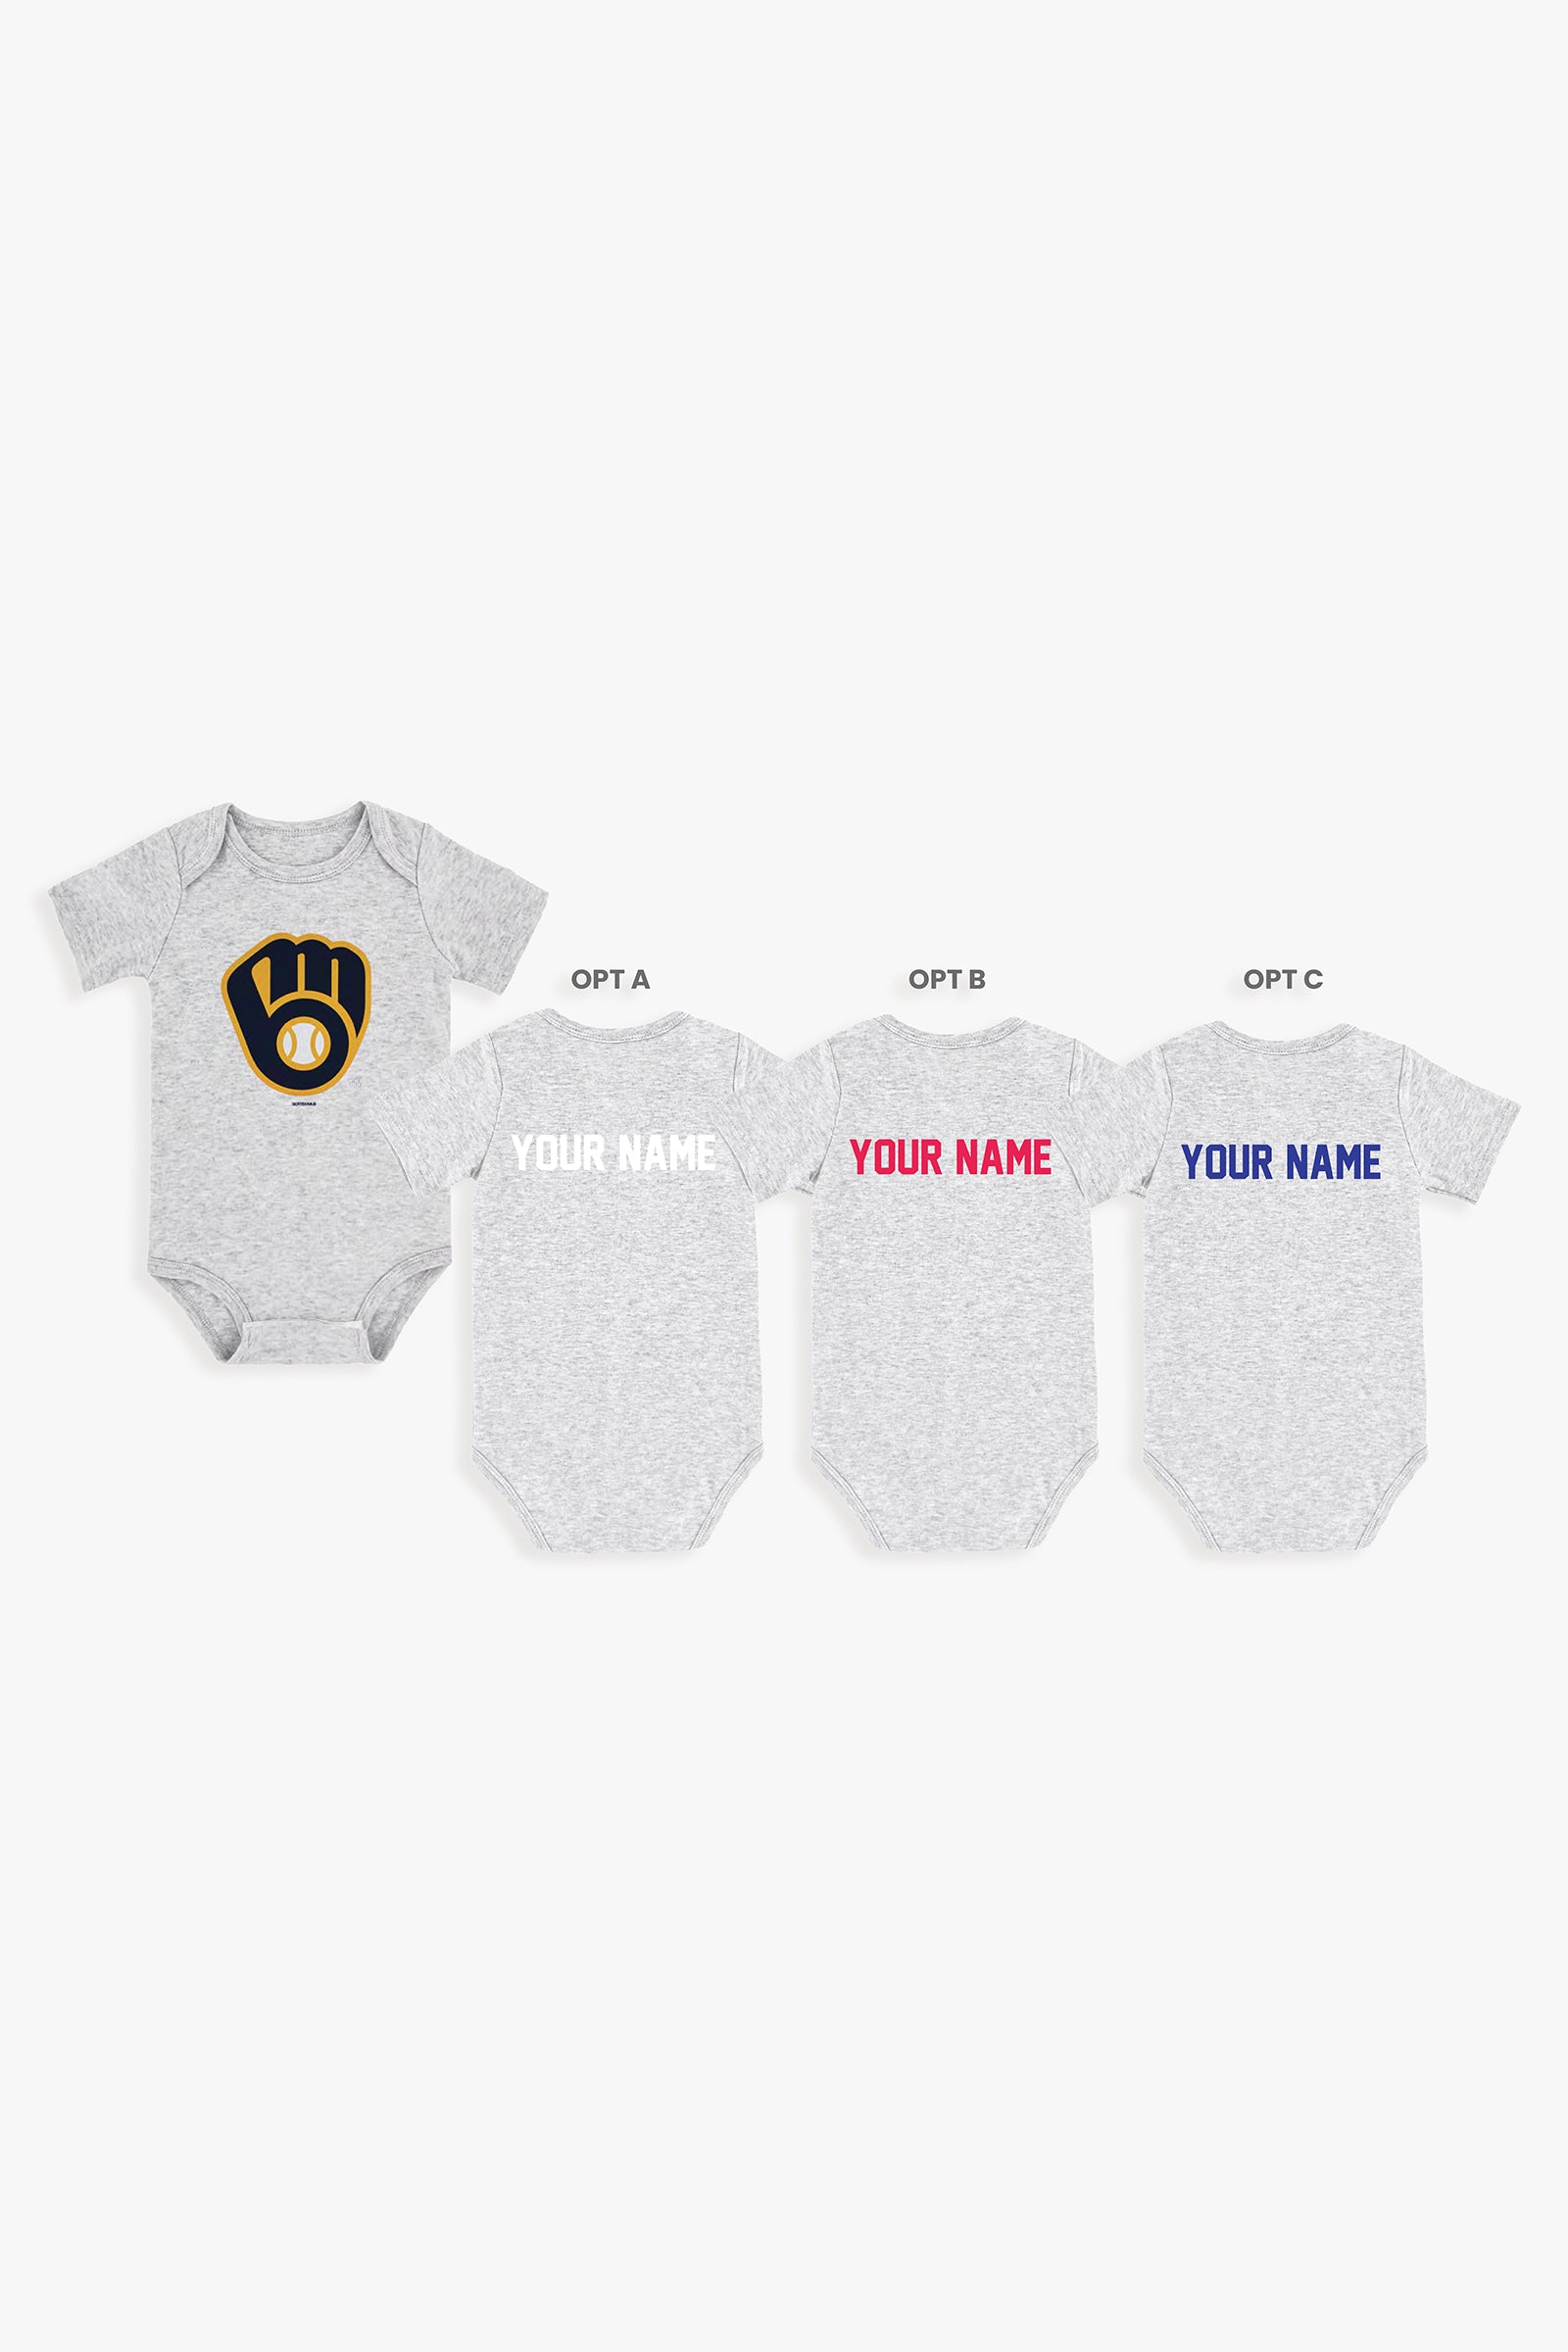 Gertex Customizable MLB Baby Onesie Bodysuit in Grey (0-3 Months)